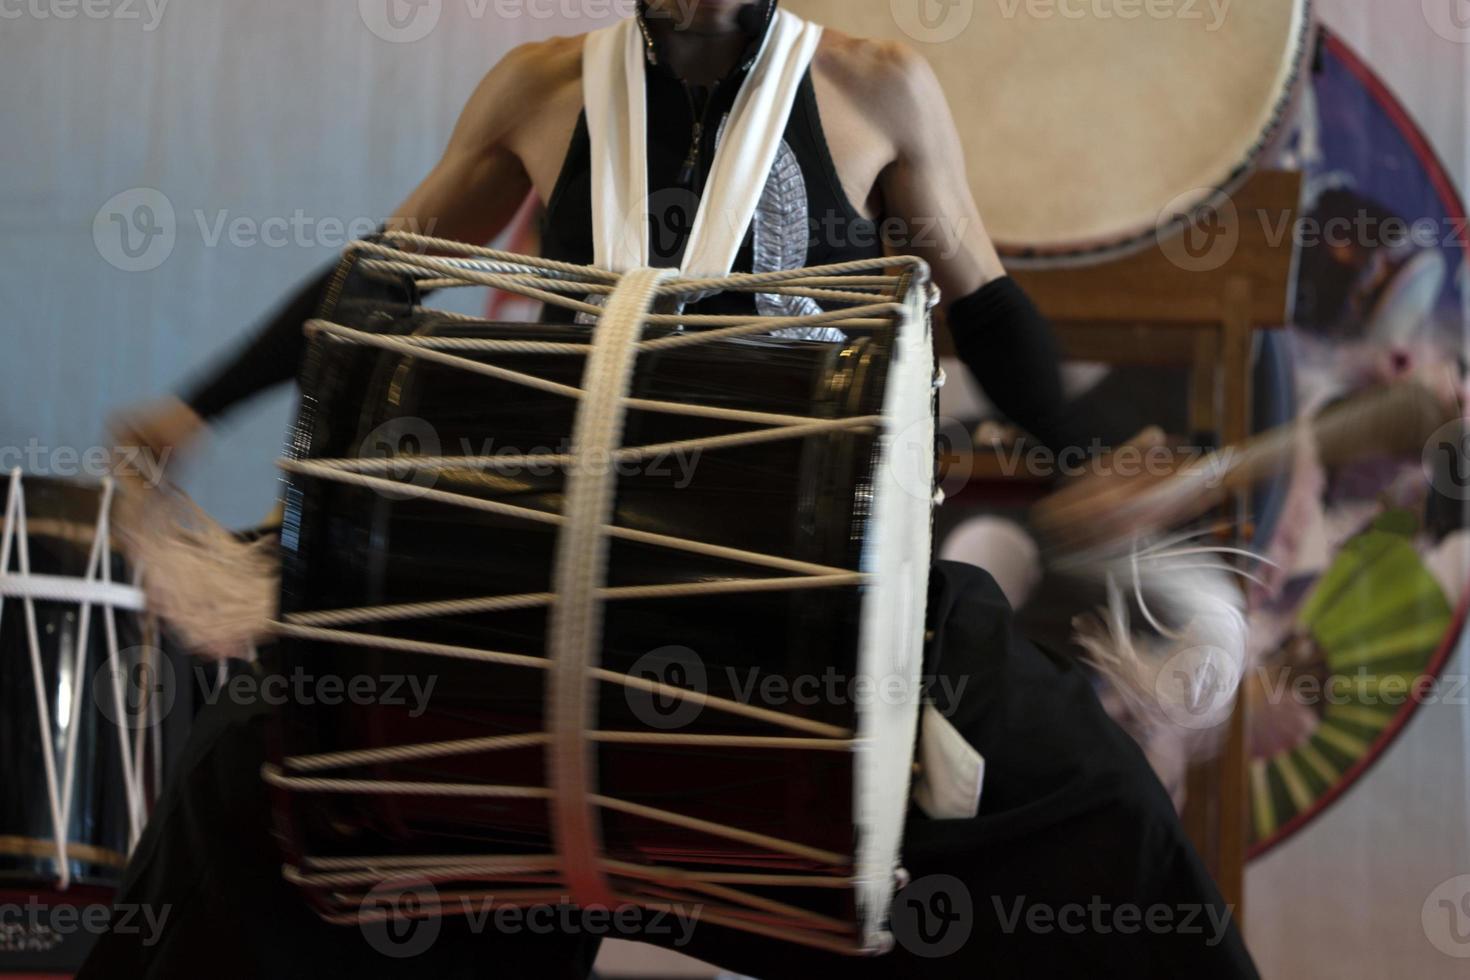 Japans trommelaar in actie foto